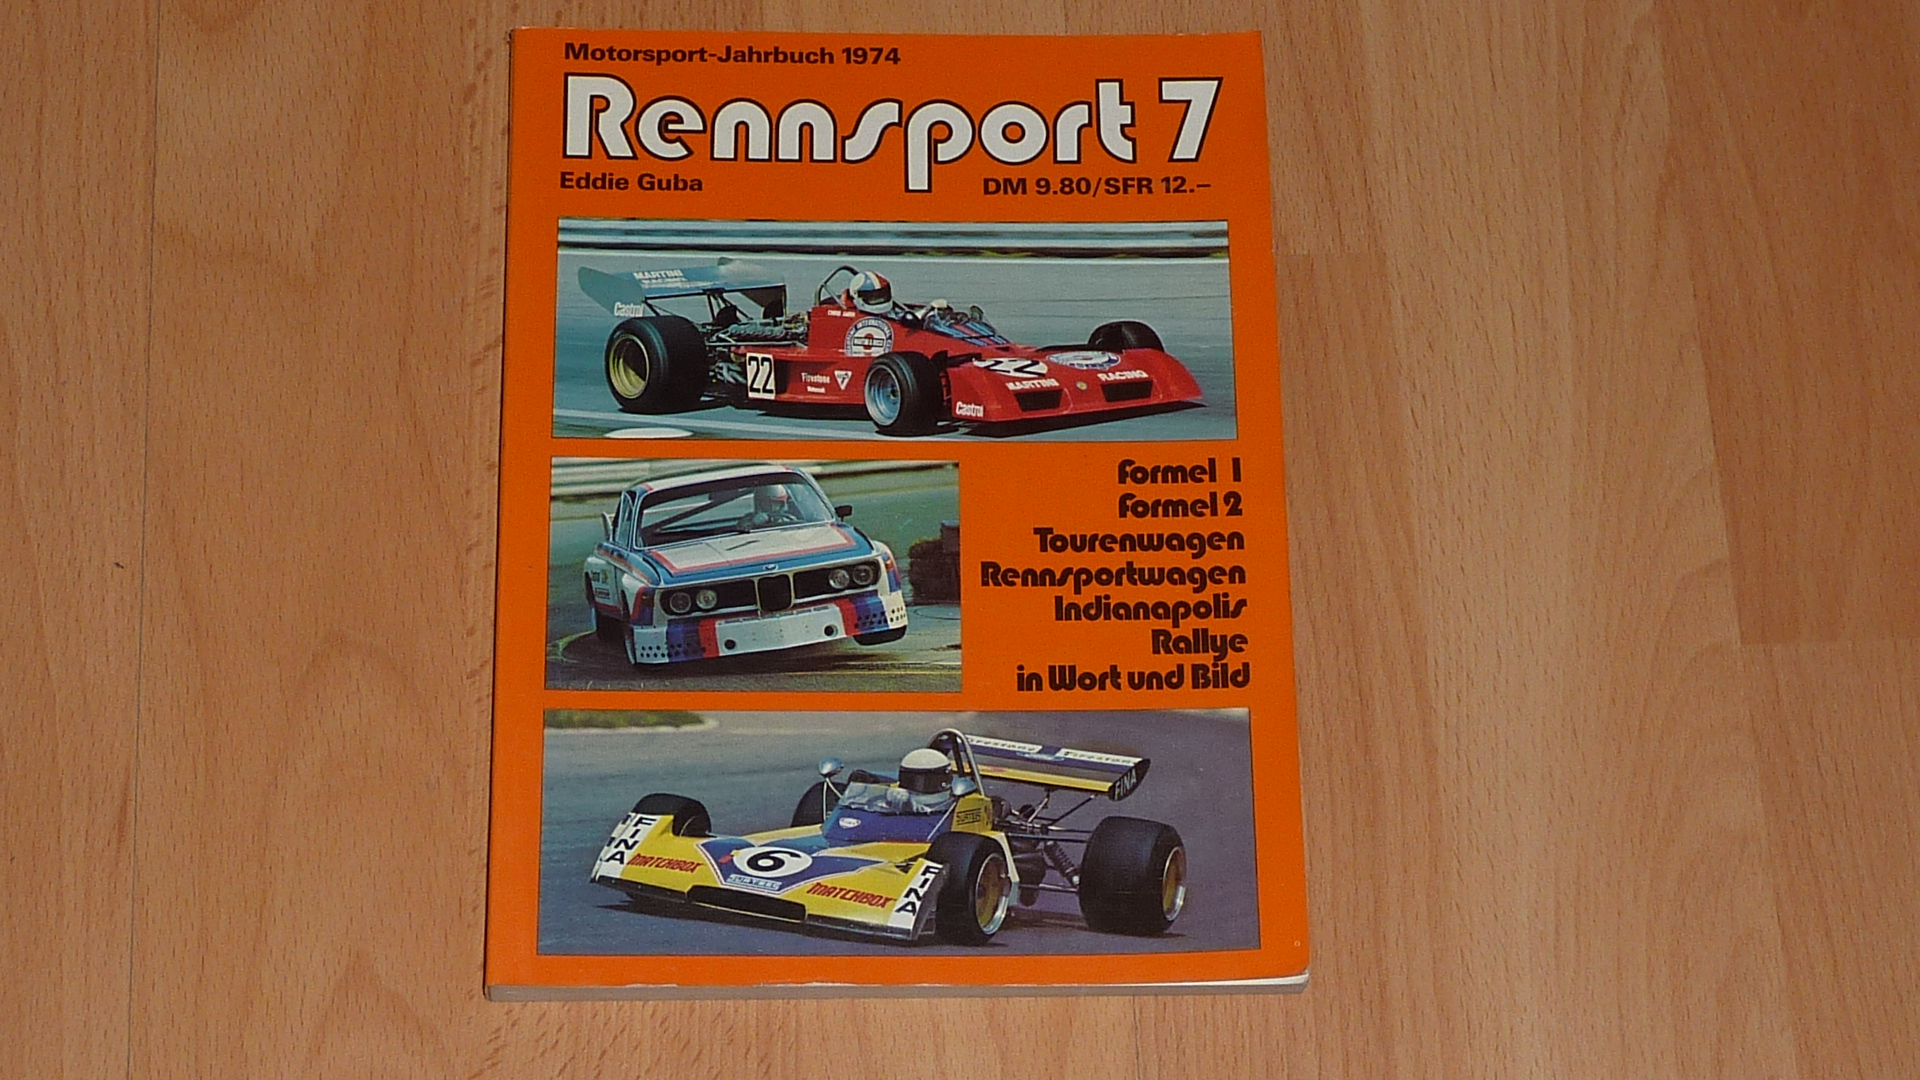 Motorsport Jahrbuch 1974 : Rennsport 7. - Eddie Guba